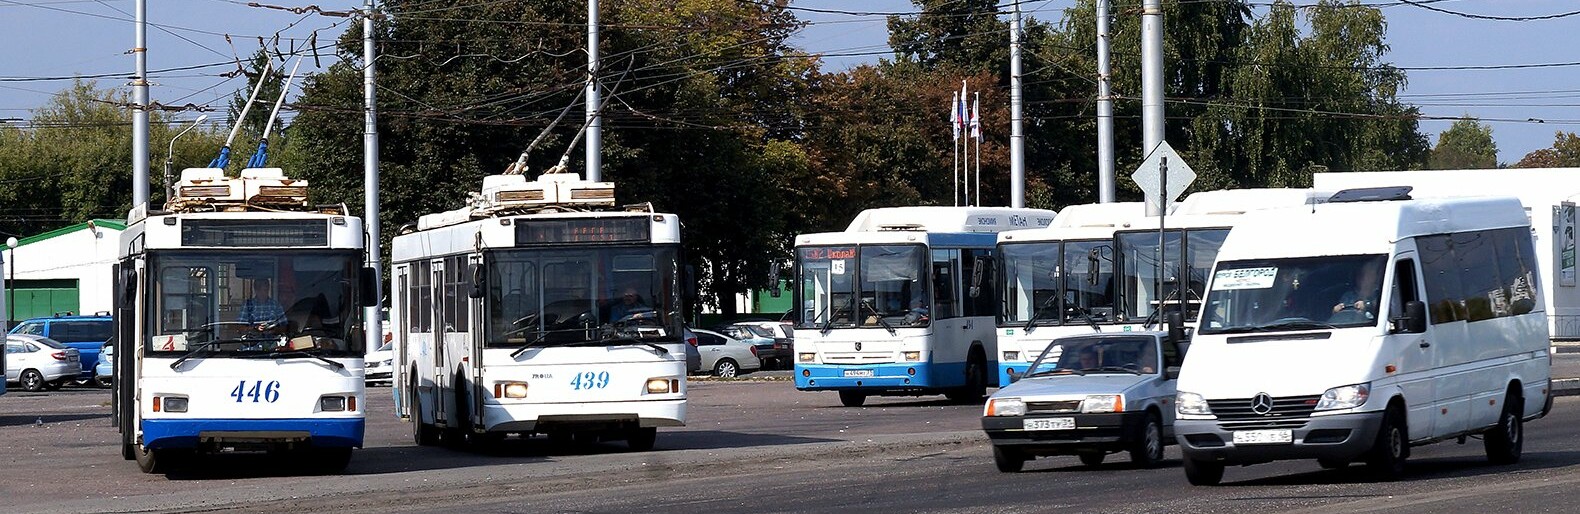 Все троллейбусы Белгорода продали на торгах в 19 раз дешевле их начальной стоимости